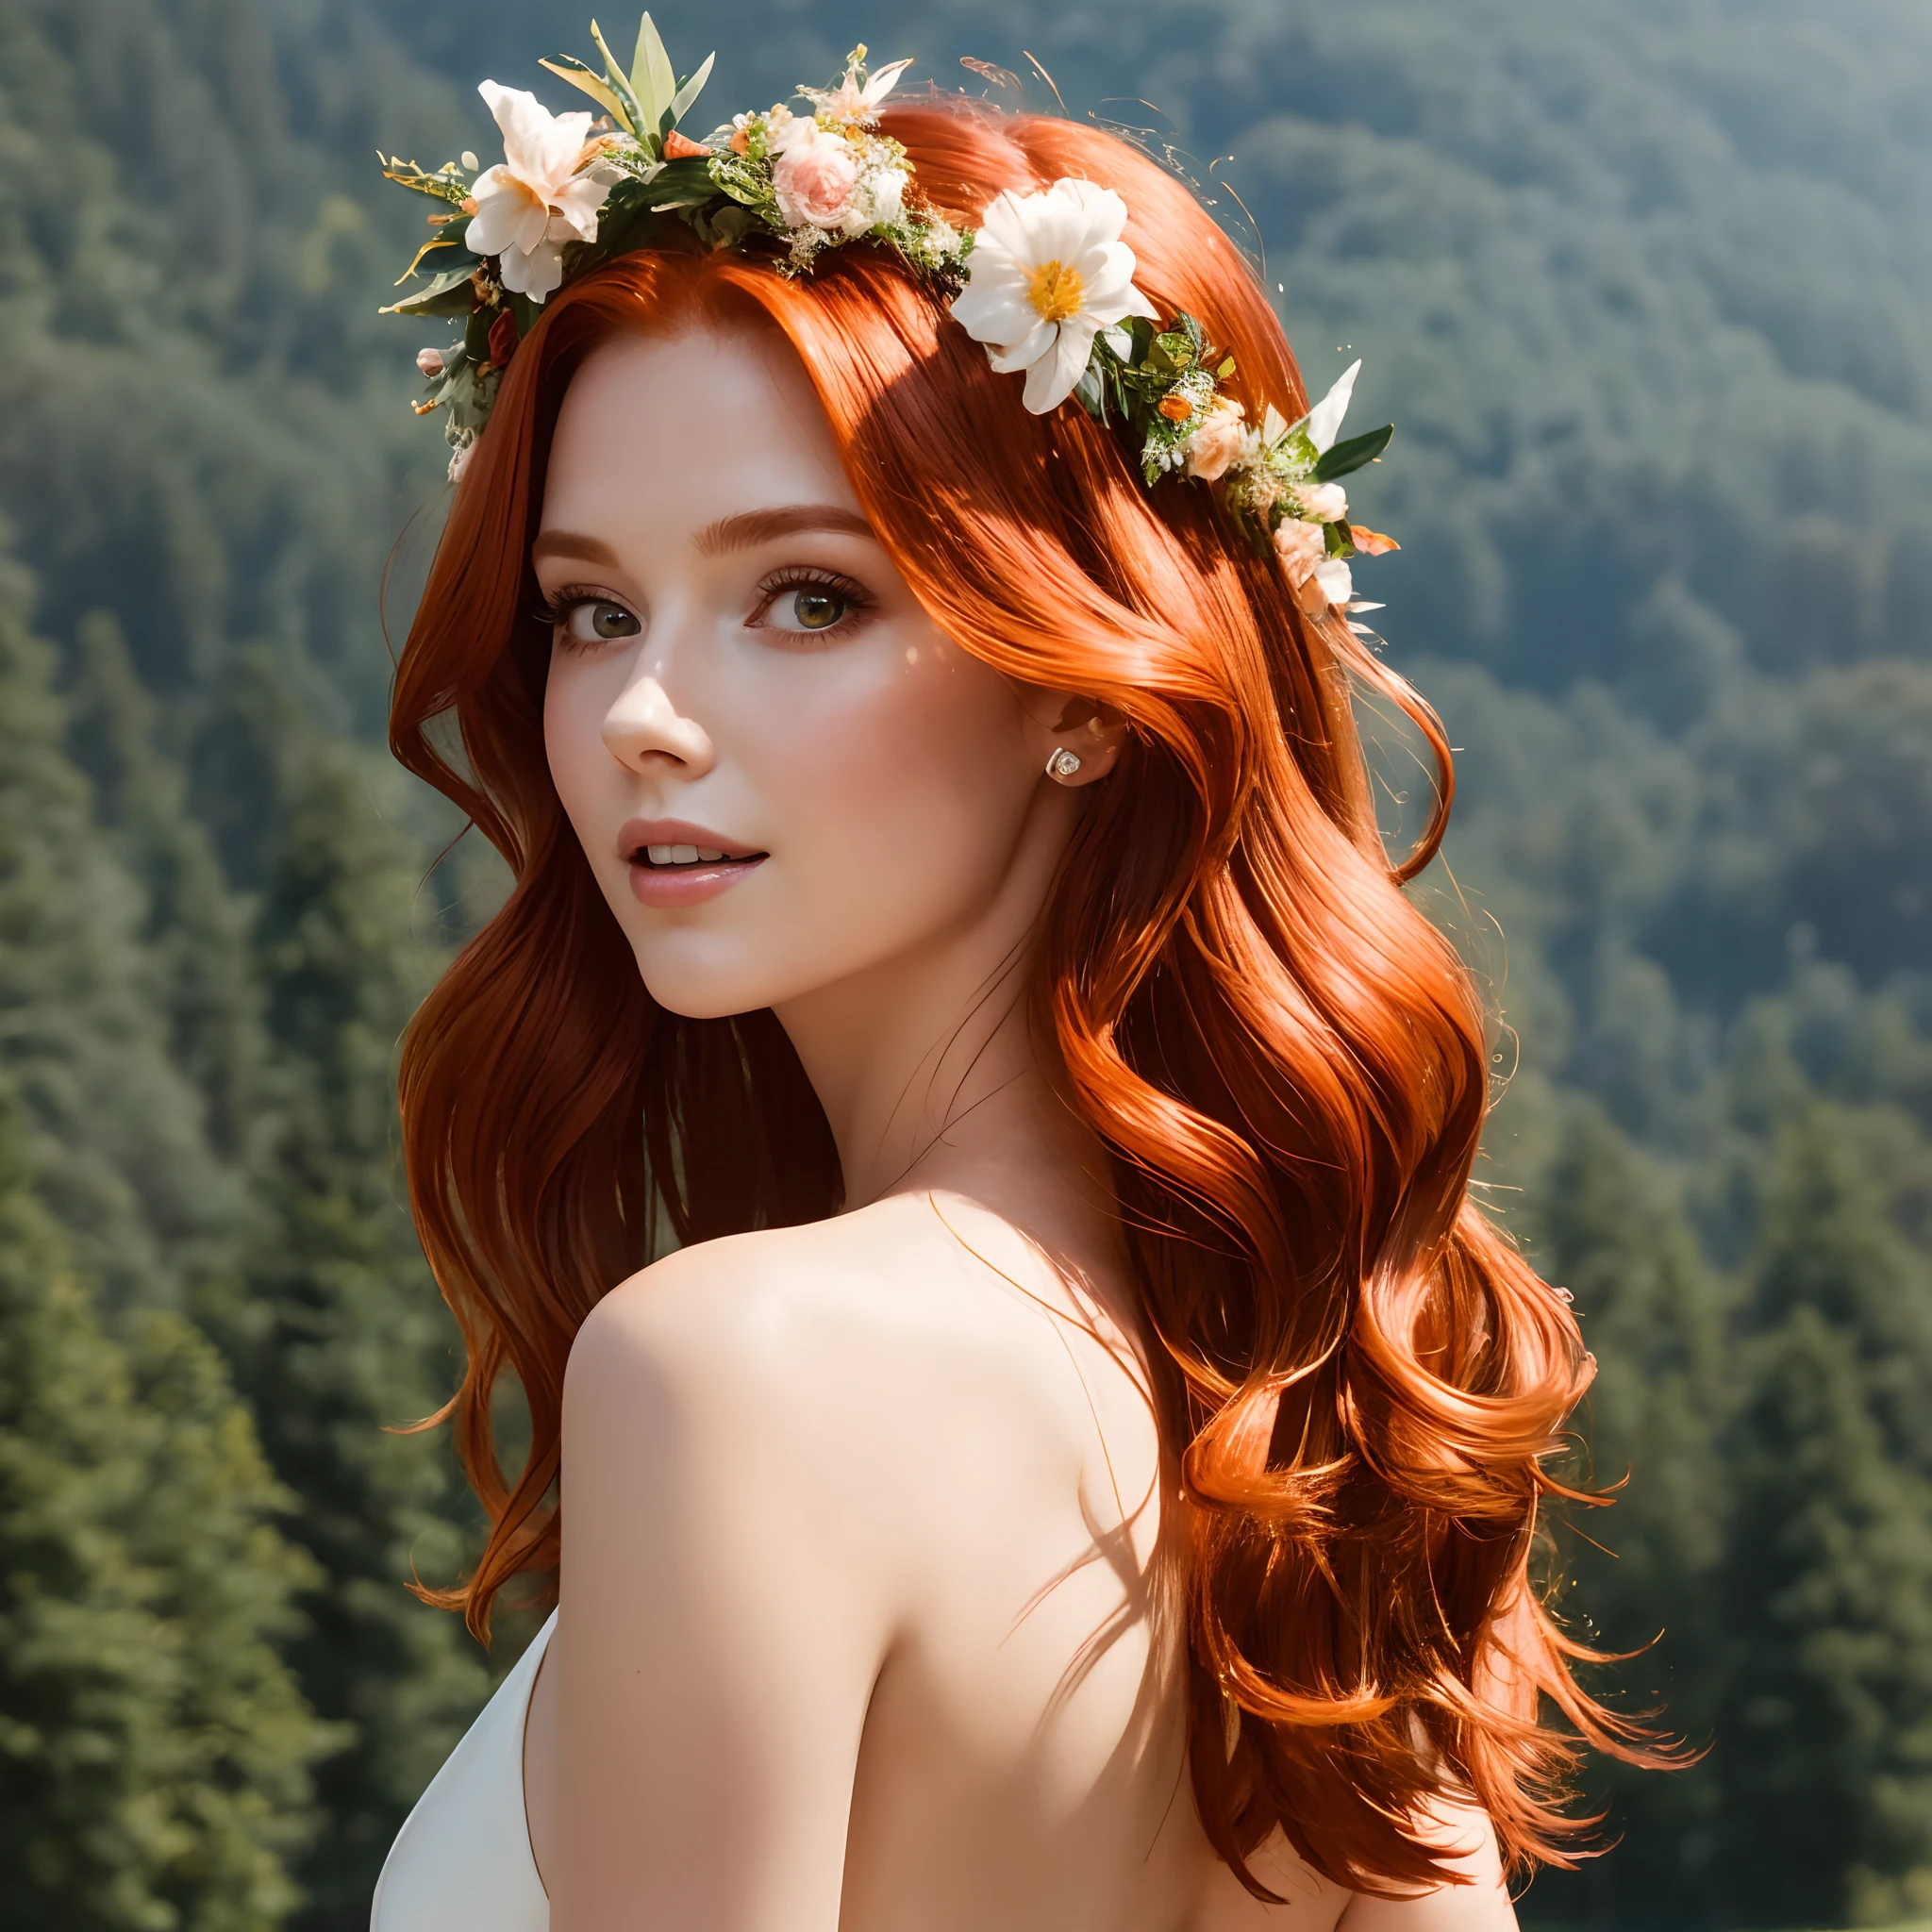 (杰作,  清晰聚焦),  ((特写:1.5)),  一位优雅的 25 岁红发女人 ,  飘逸的头发, 淡淡的微笑,  丰满的身材, 森林背景,  体积光,  优雅夏装,  焦点面,  阳光下小雨,  红发, 结局,  轻雾,  花冠